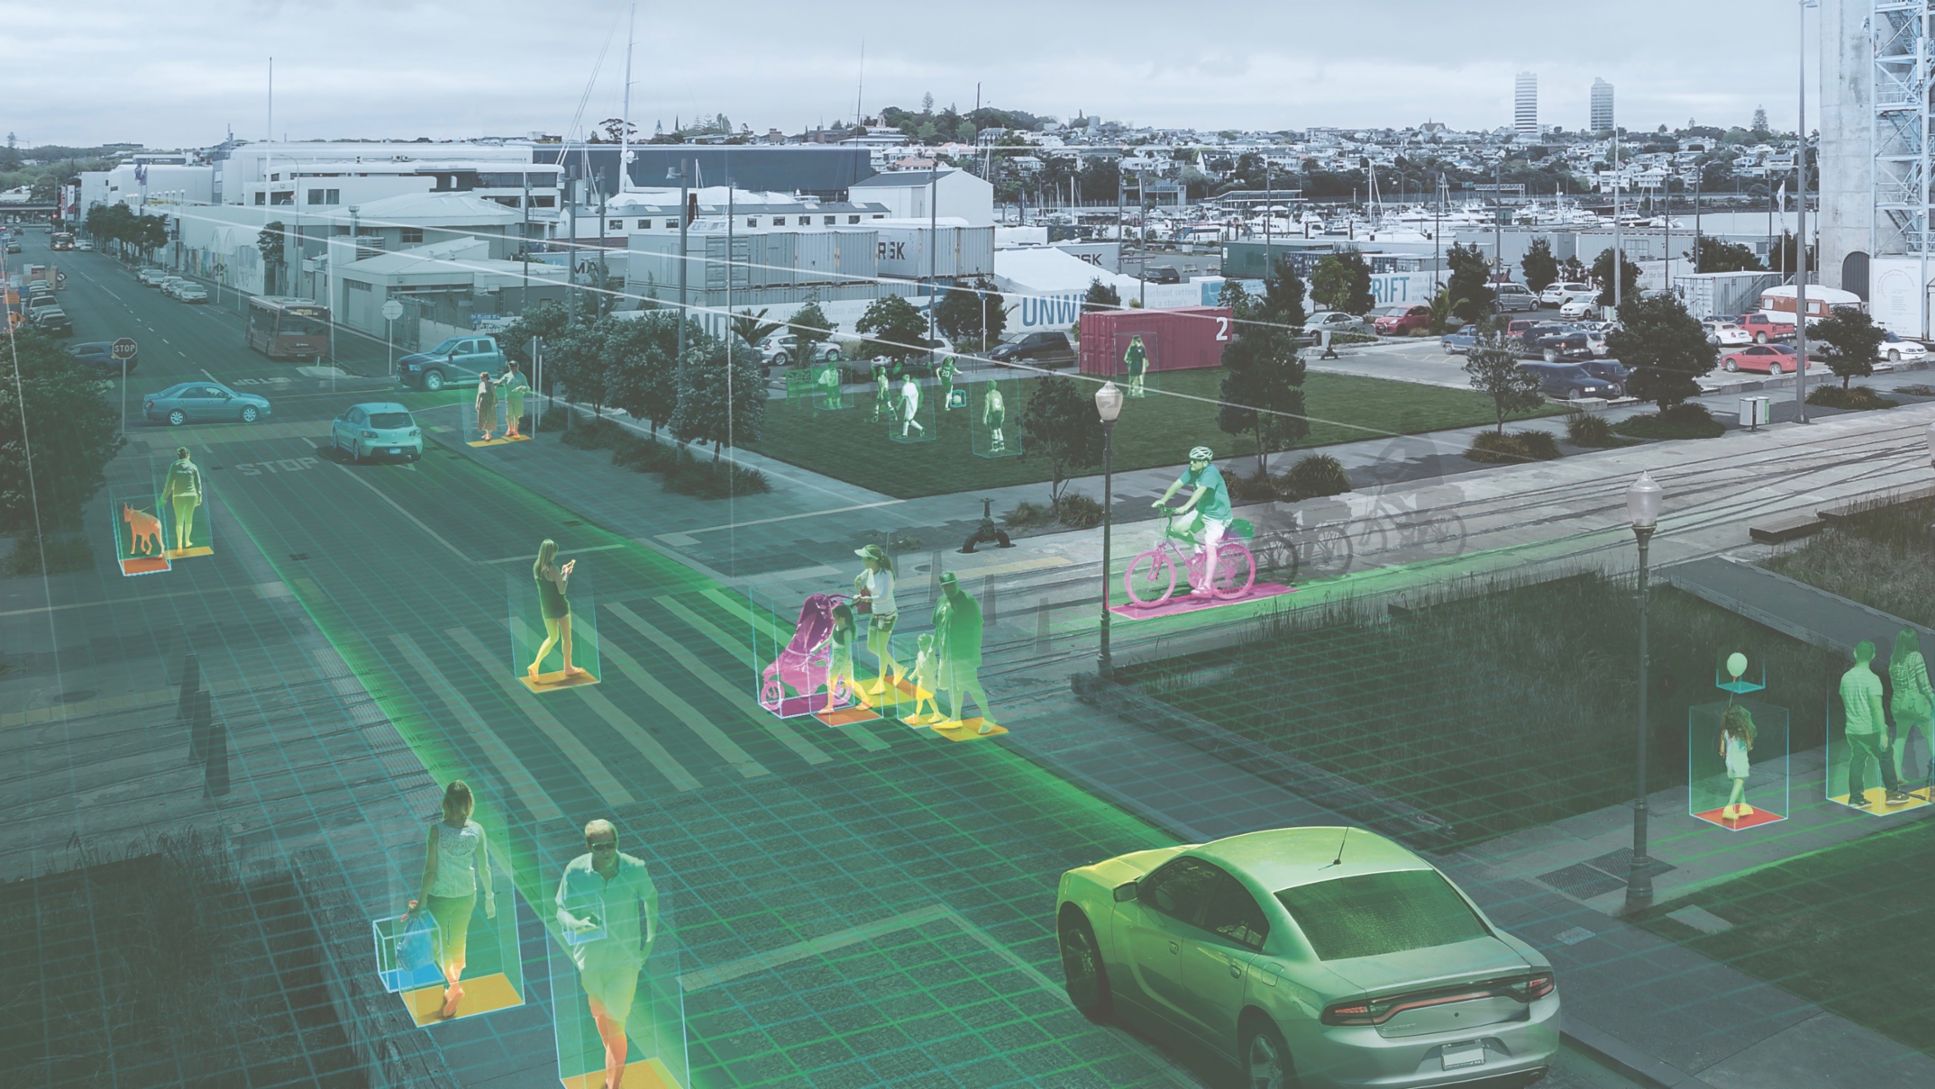 Inteligencia artificial aplicada a la seguridad en entornos urbanos, 2020, Porsche AG